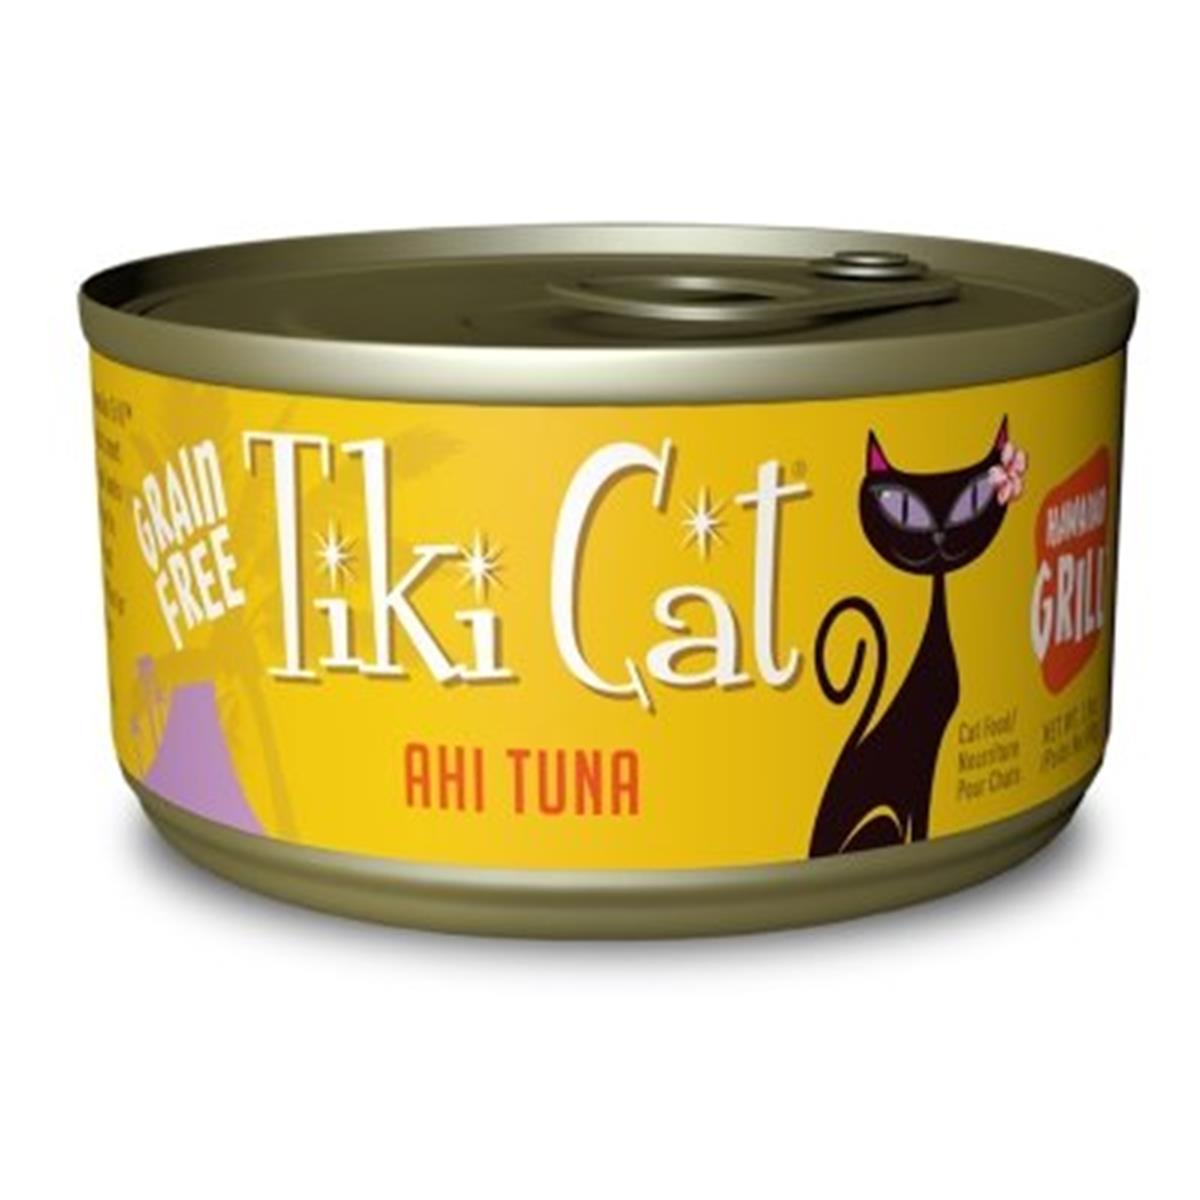 Tk10031 Hawaiian Grill Grain-free Ahi Tuna Wet Cat Food - 2.8 Oz - Case Of 12